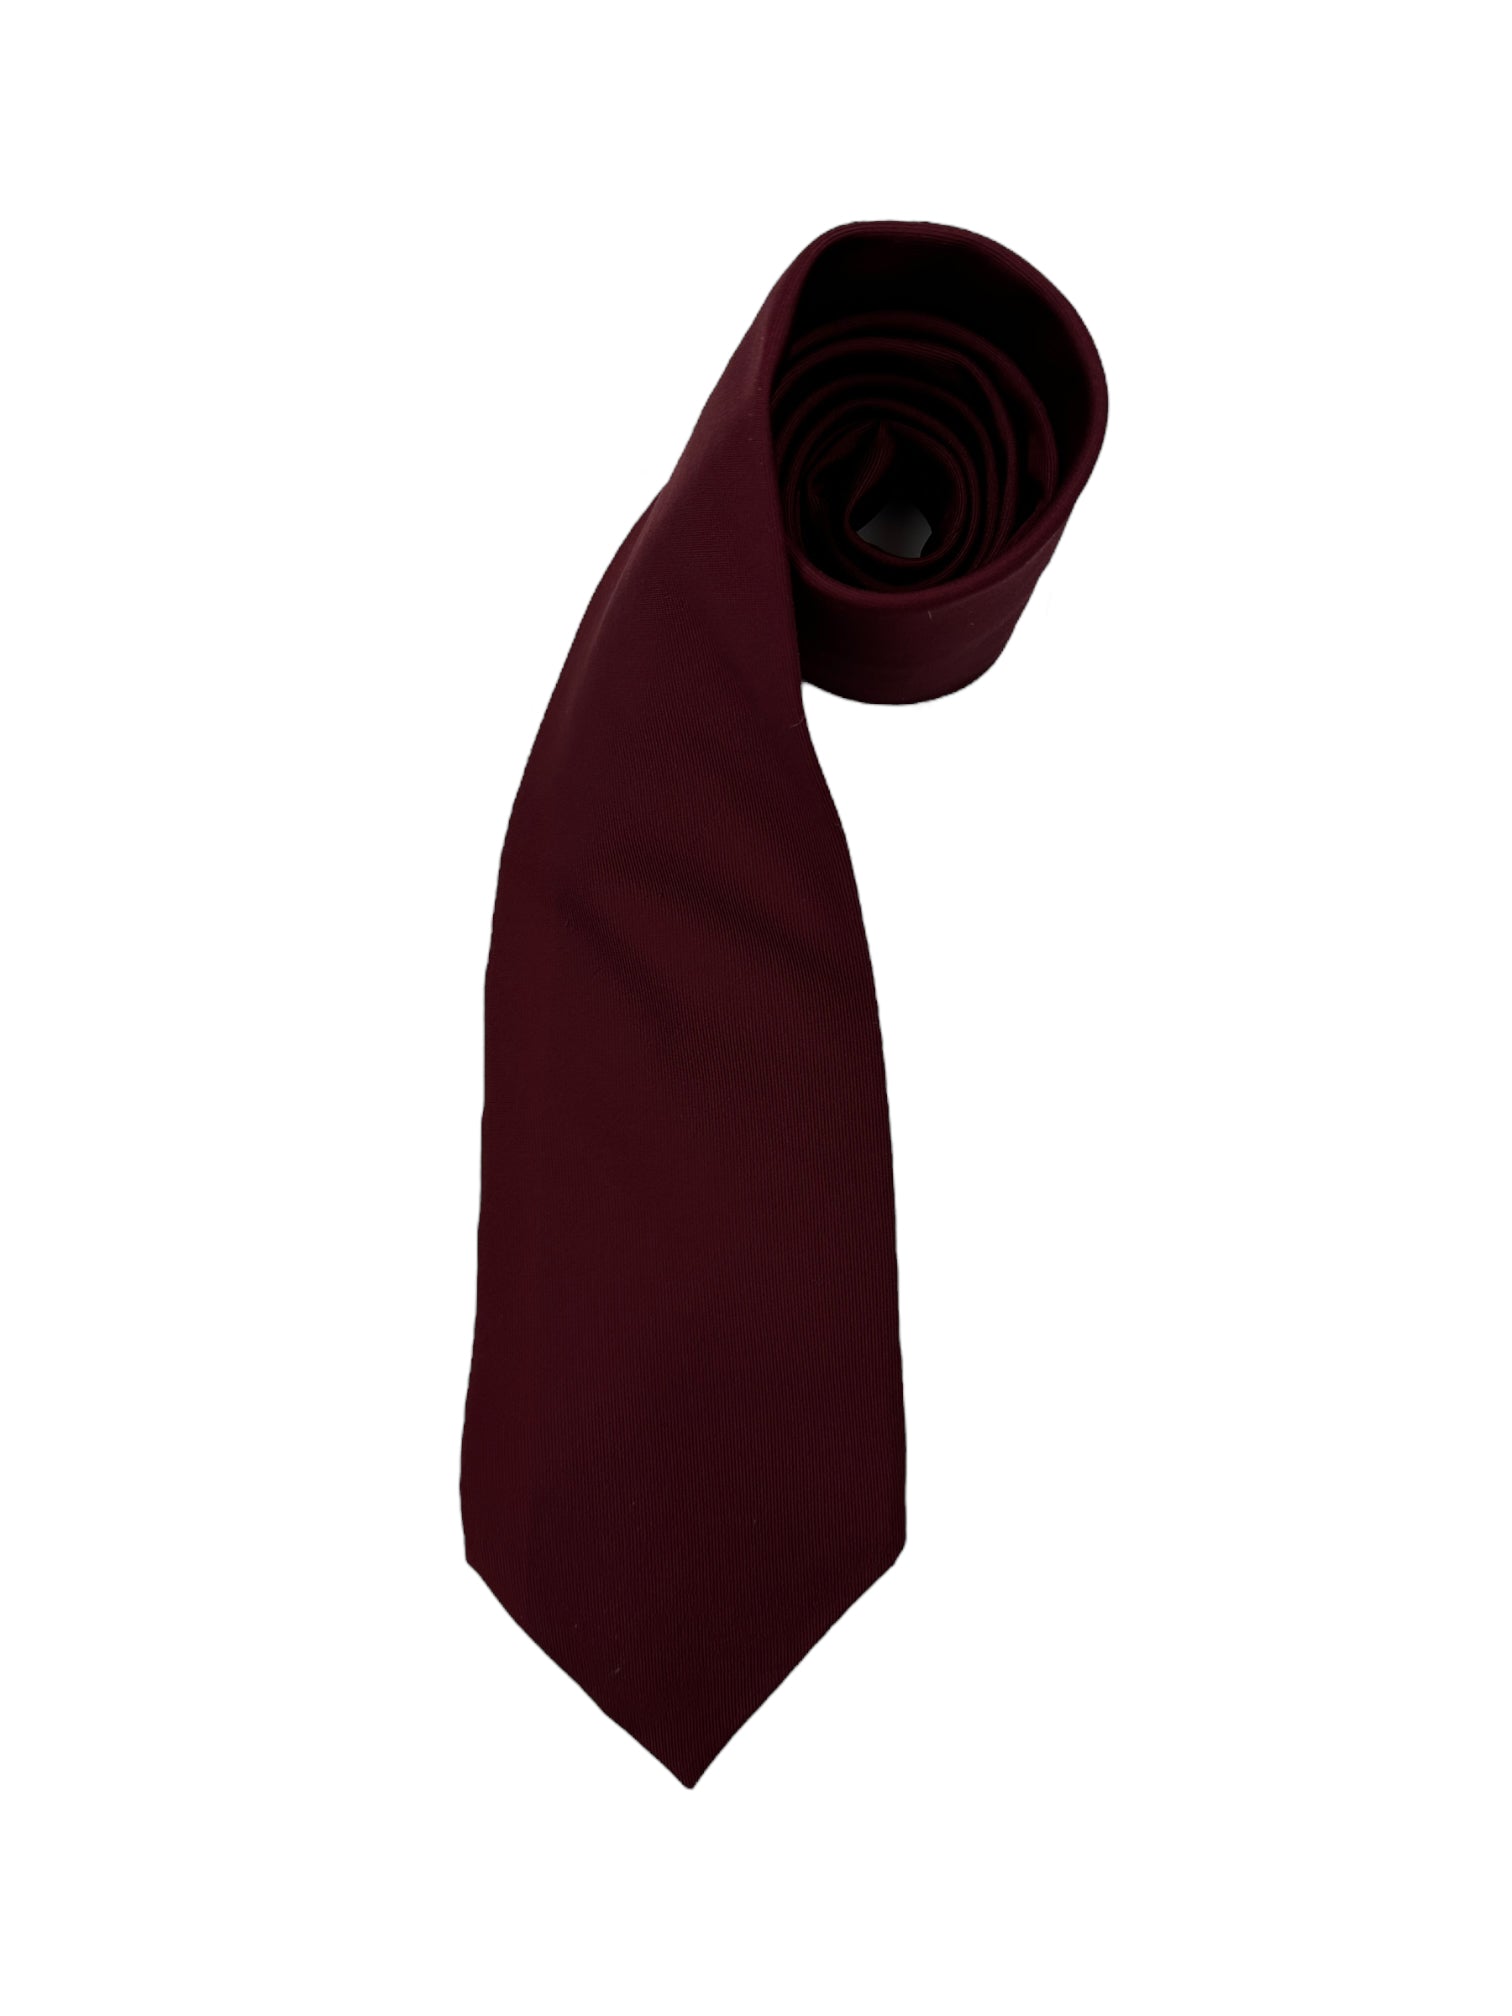 E.Marinella rode zijden stropdas